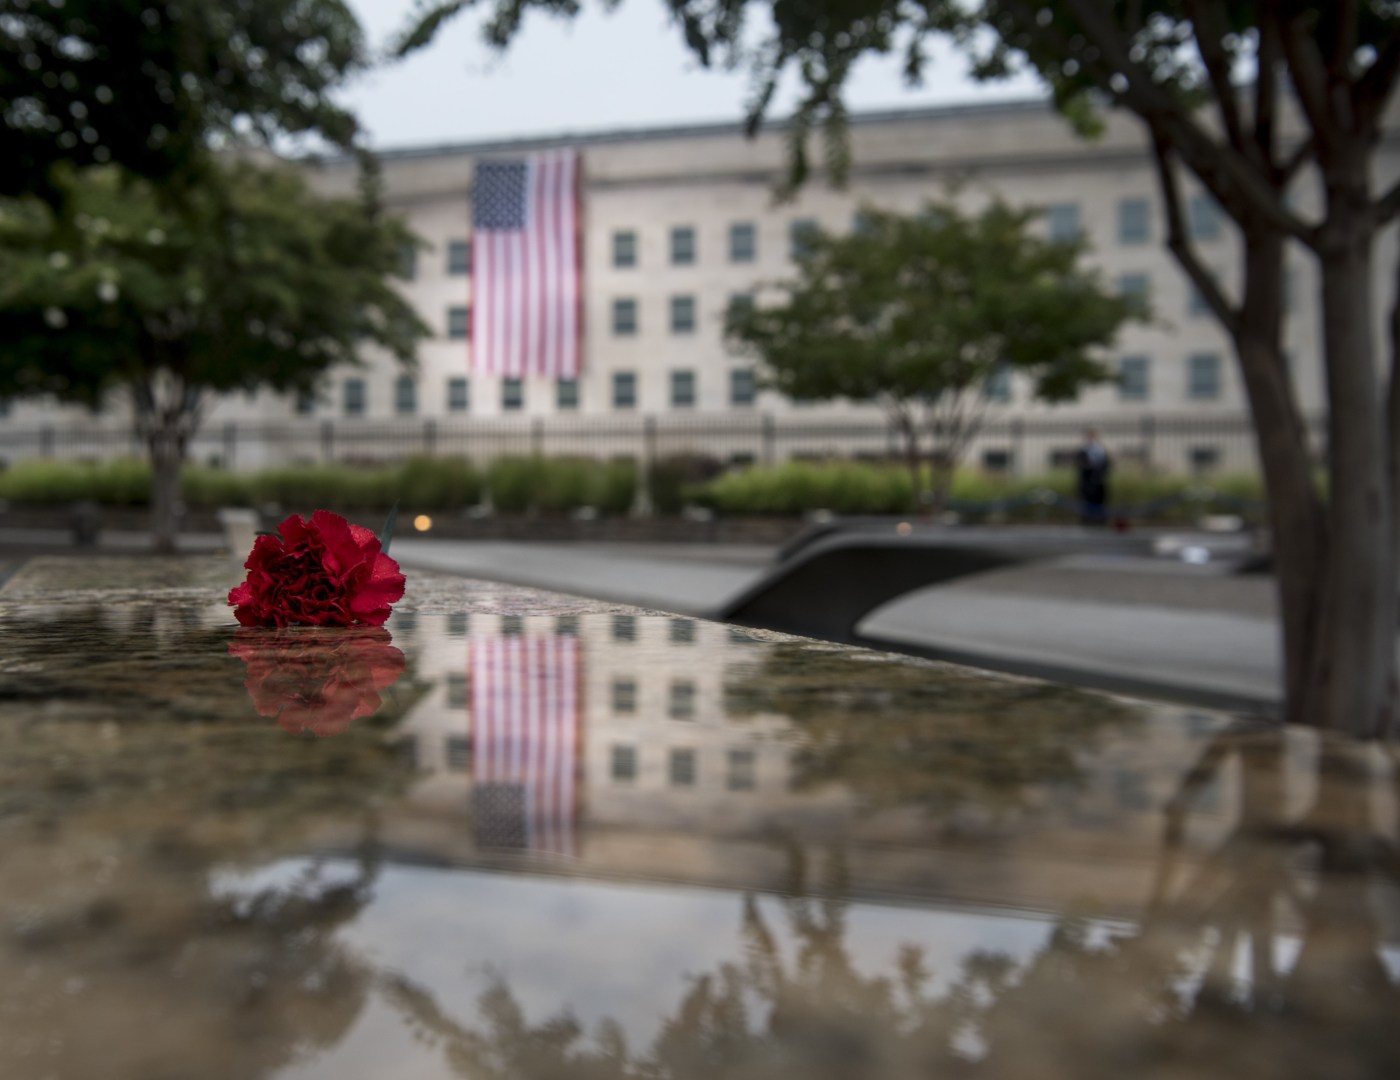 Global War on Terror Memorial crosses major hurdle